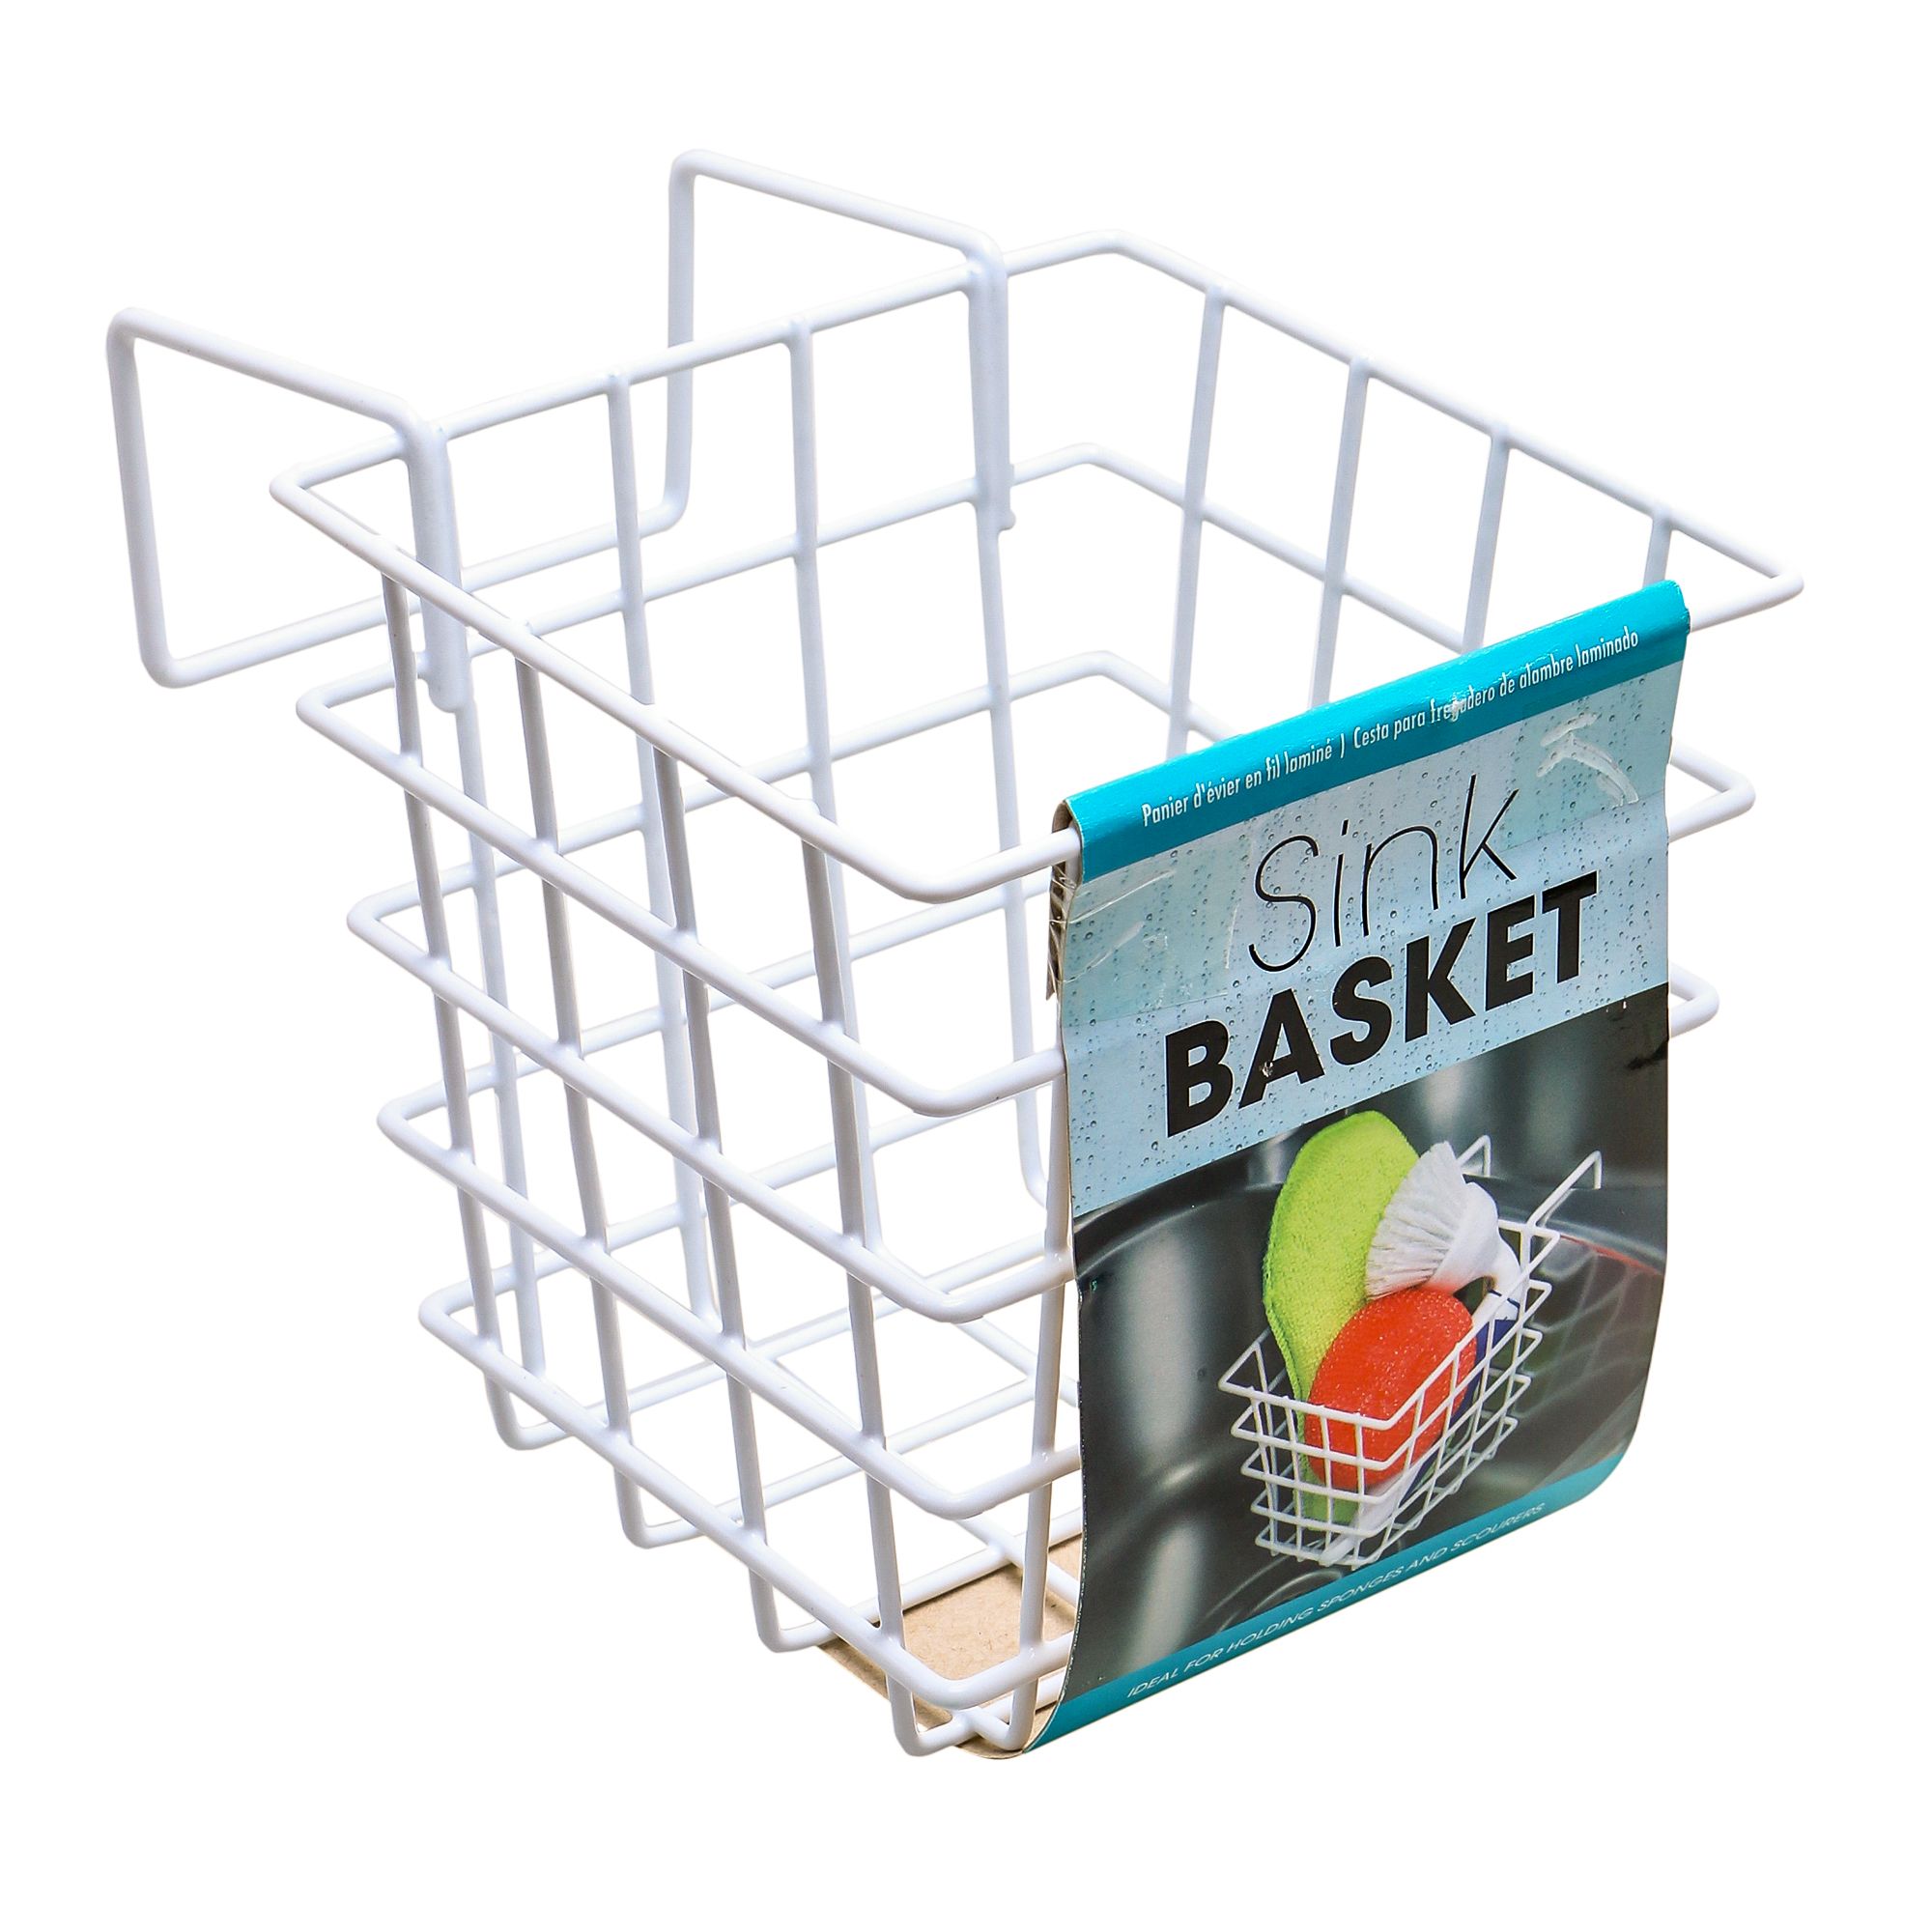 Sink Basket Laminated Wire